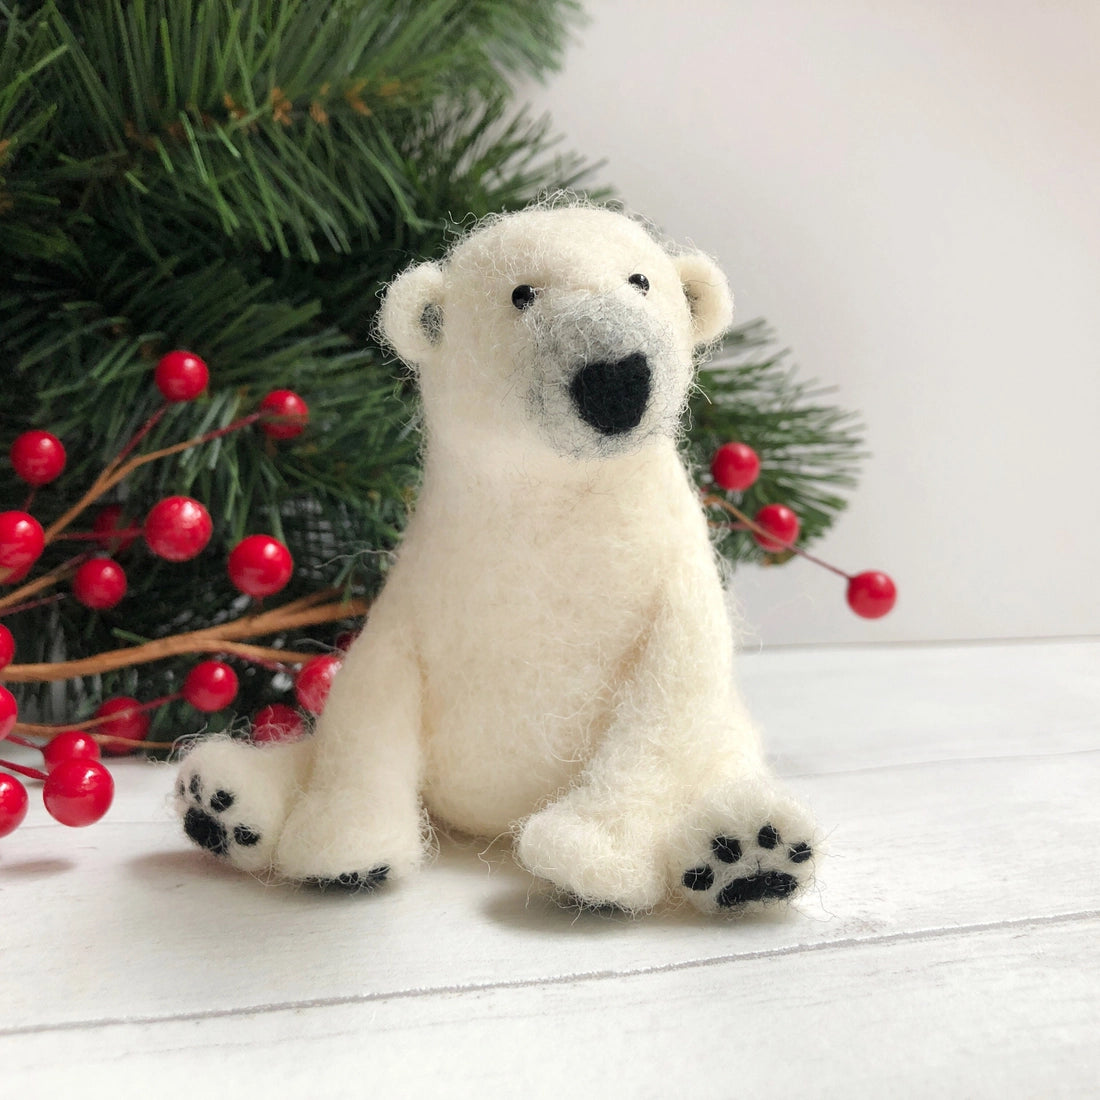 Tiny White Bear Sitting - Needle Felting Wool Kit